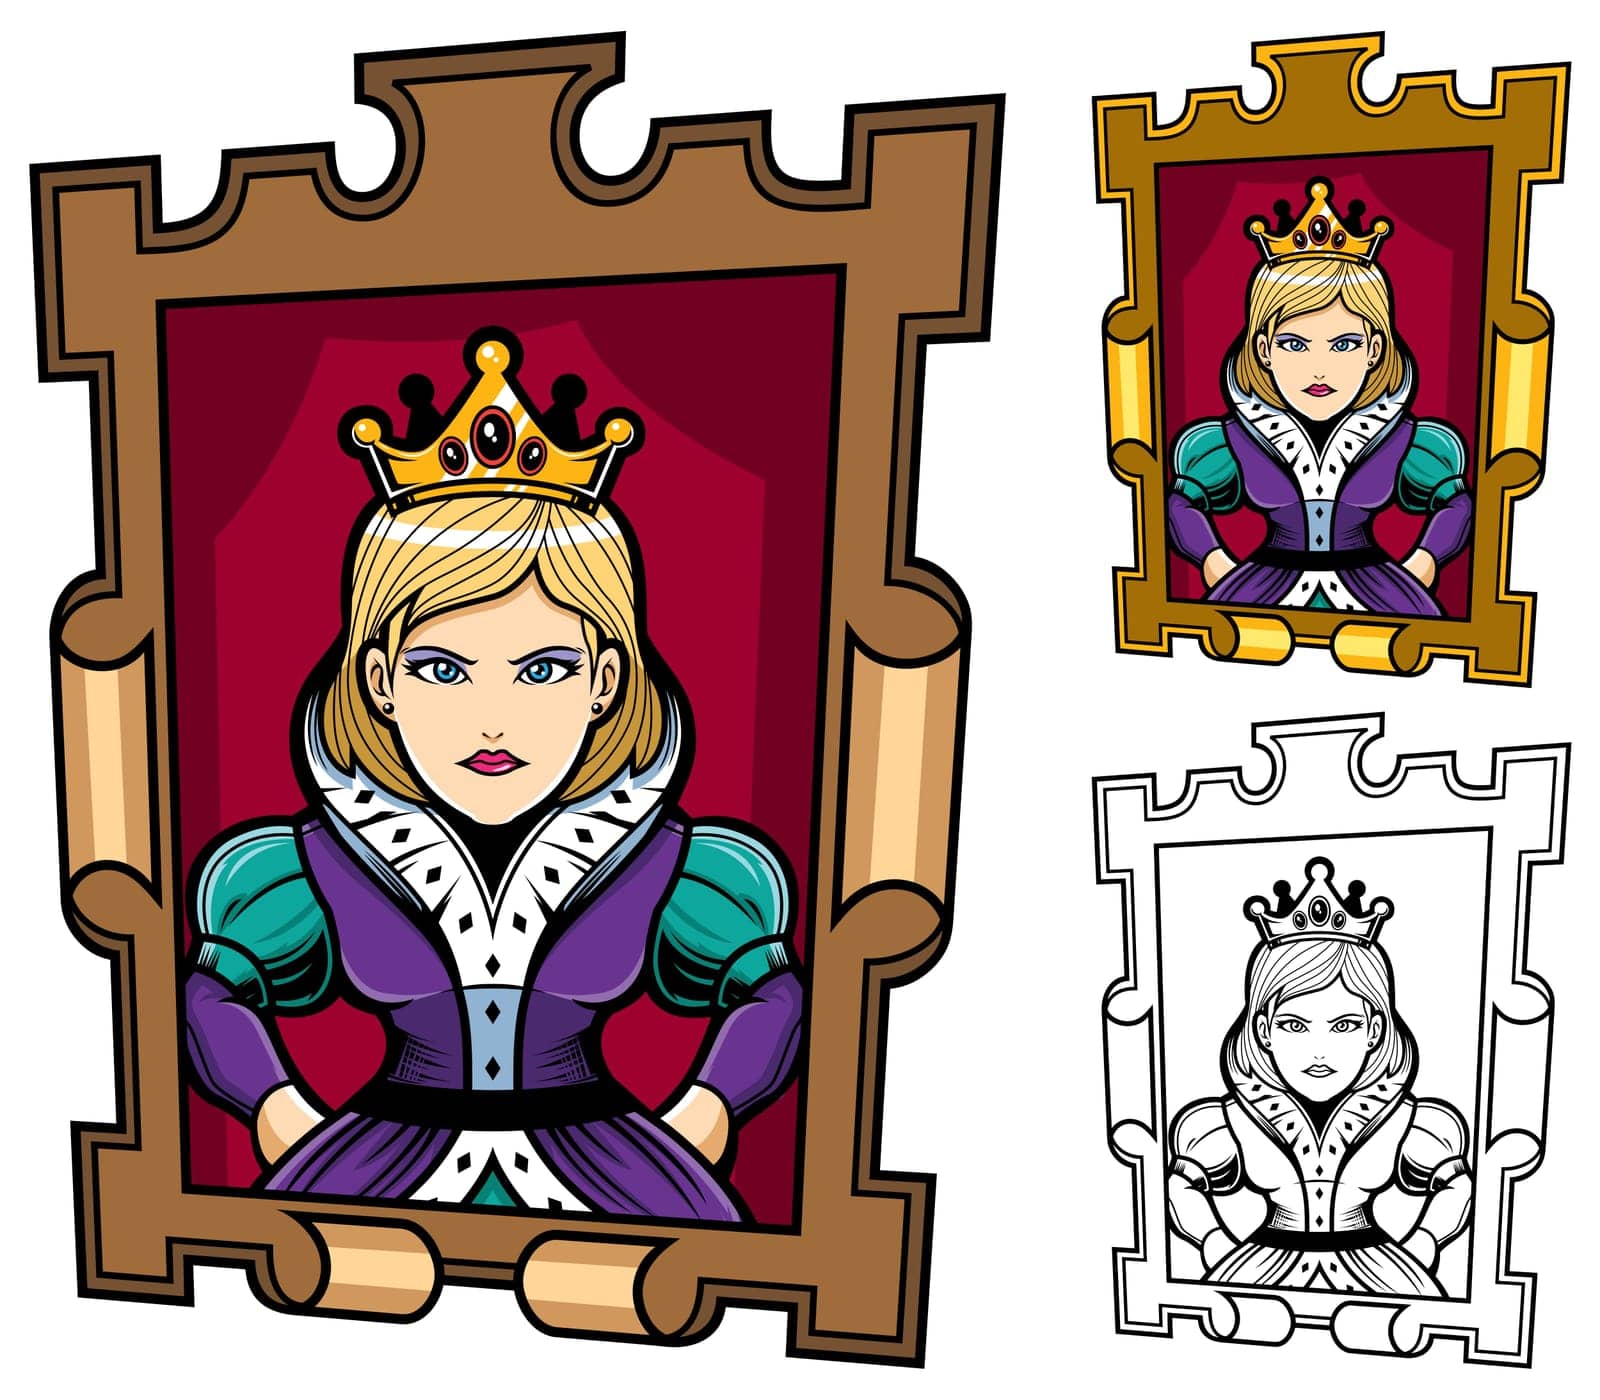 Queen portrait mascot or logo in 3 versions.